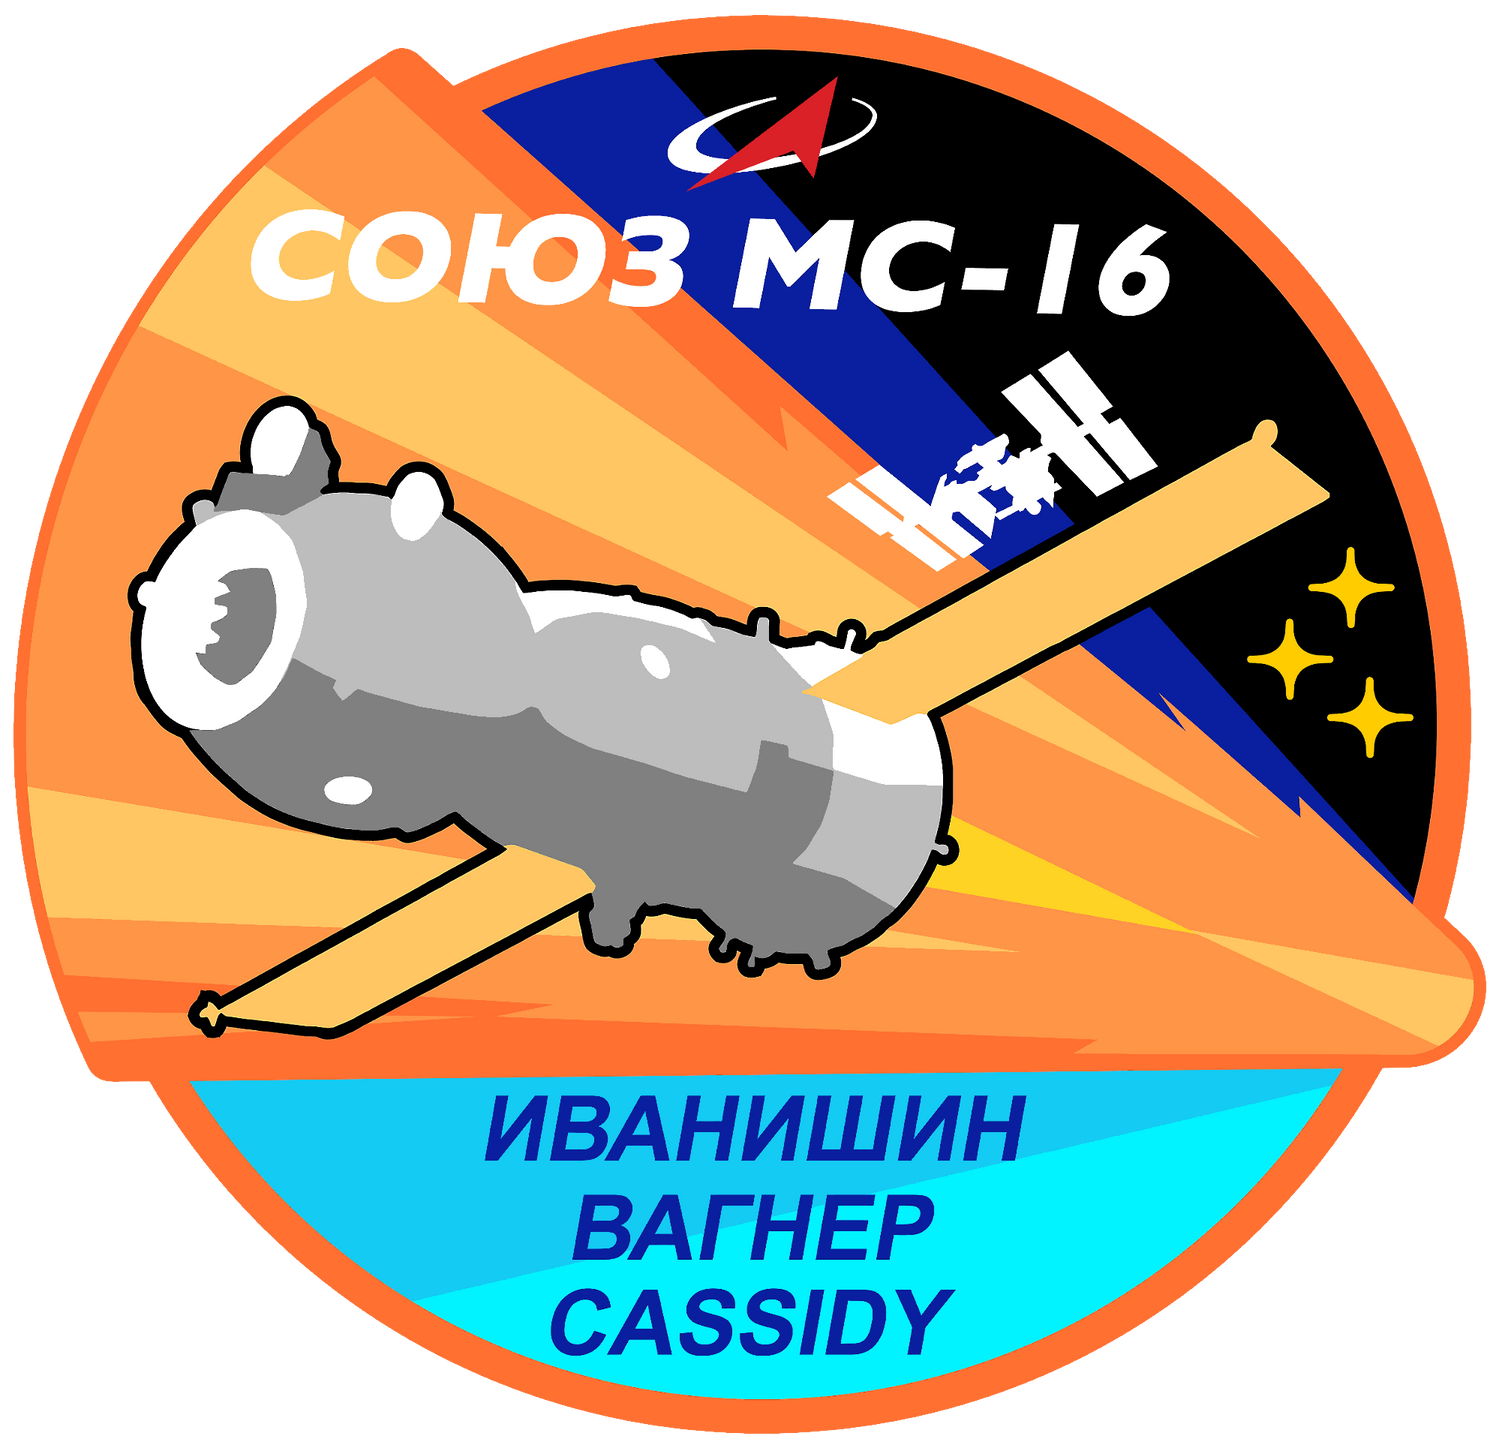 Soyuz MS-16